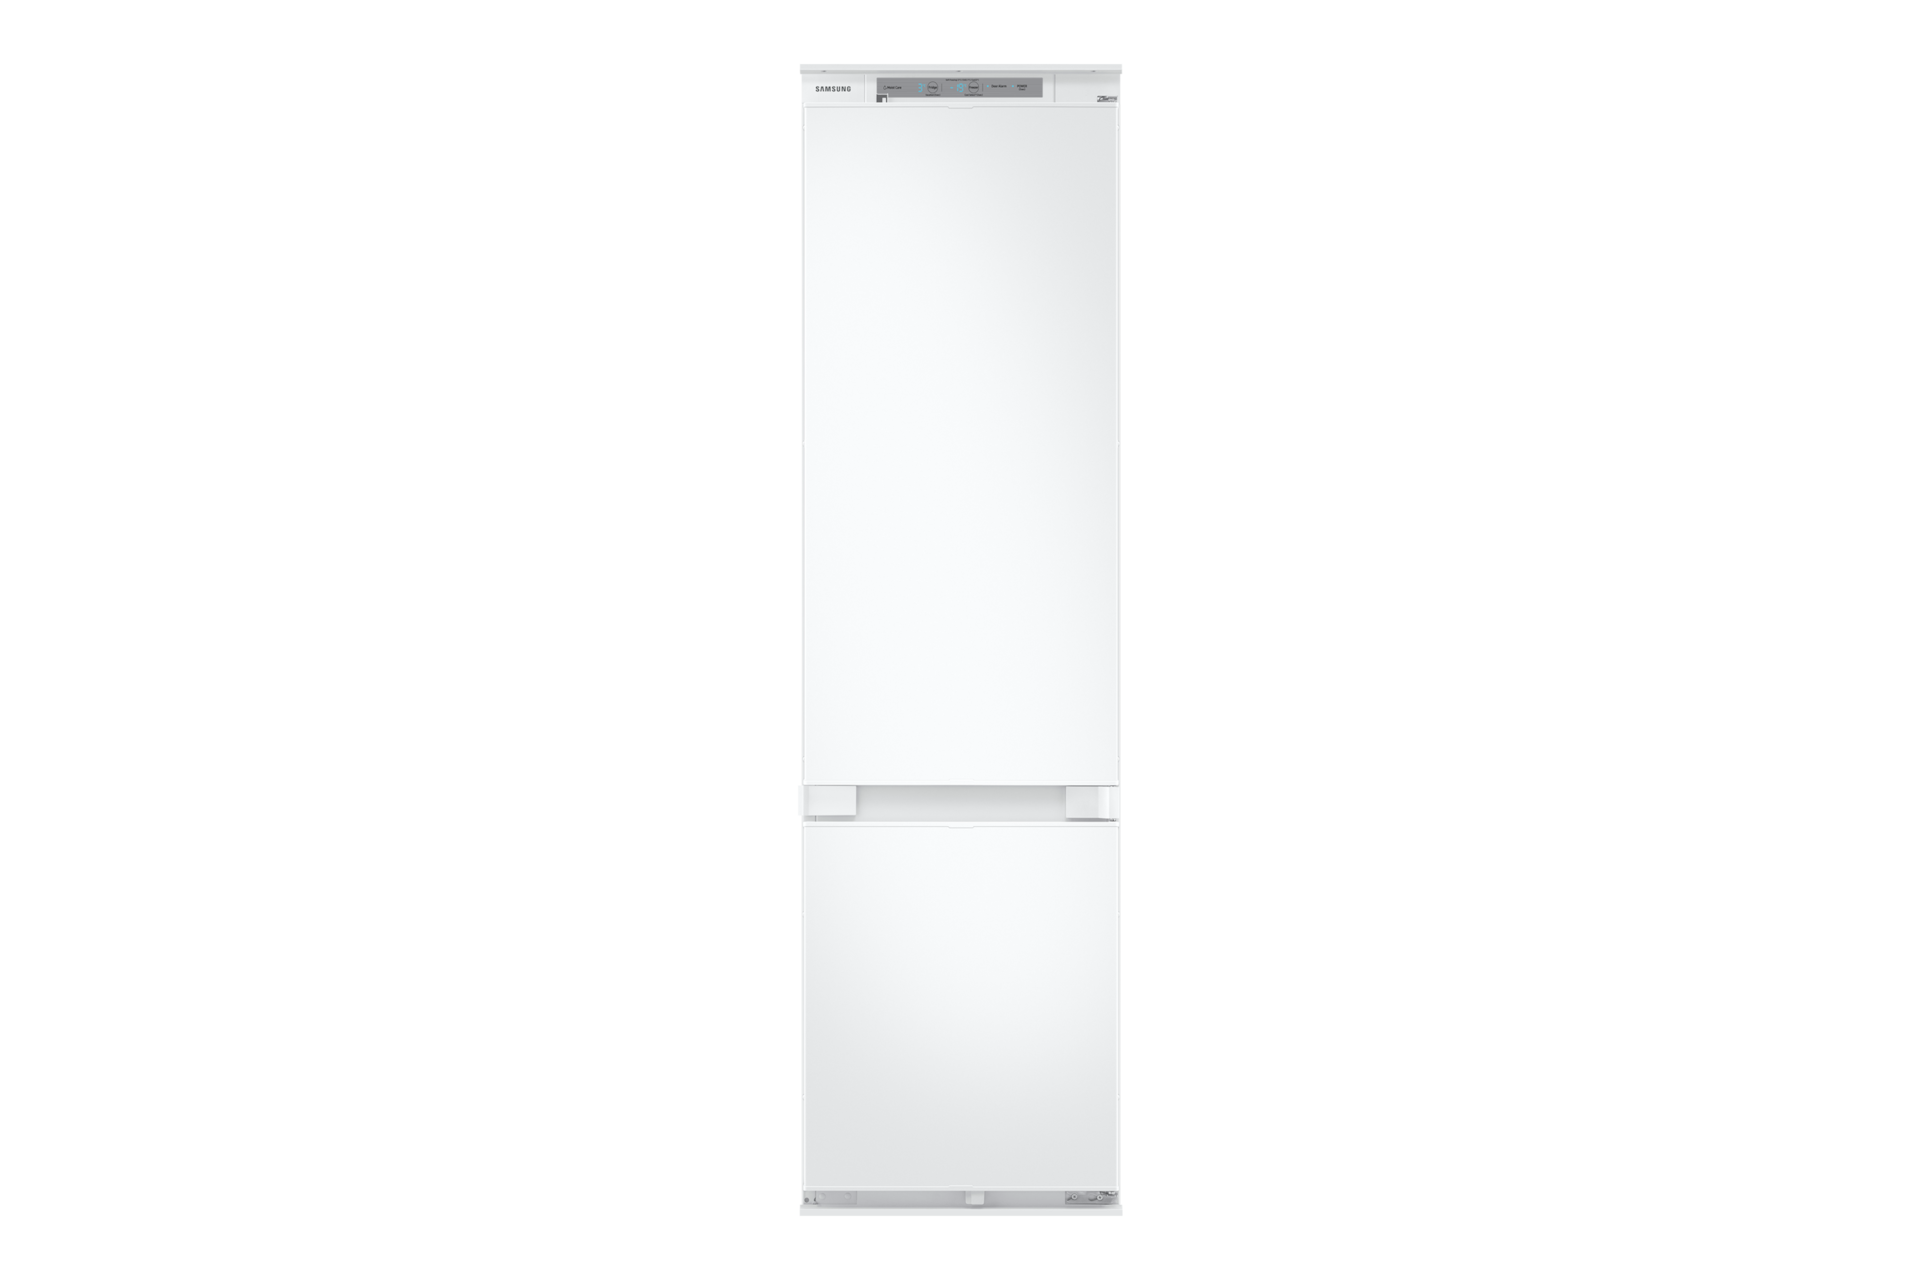 Ce réfrigérateur congélateur signé Samsung est excellent, le prix